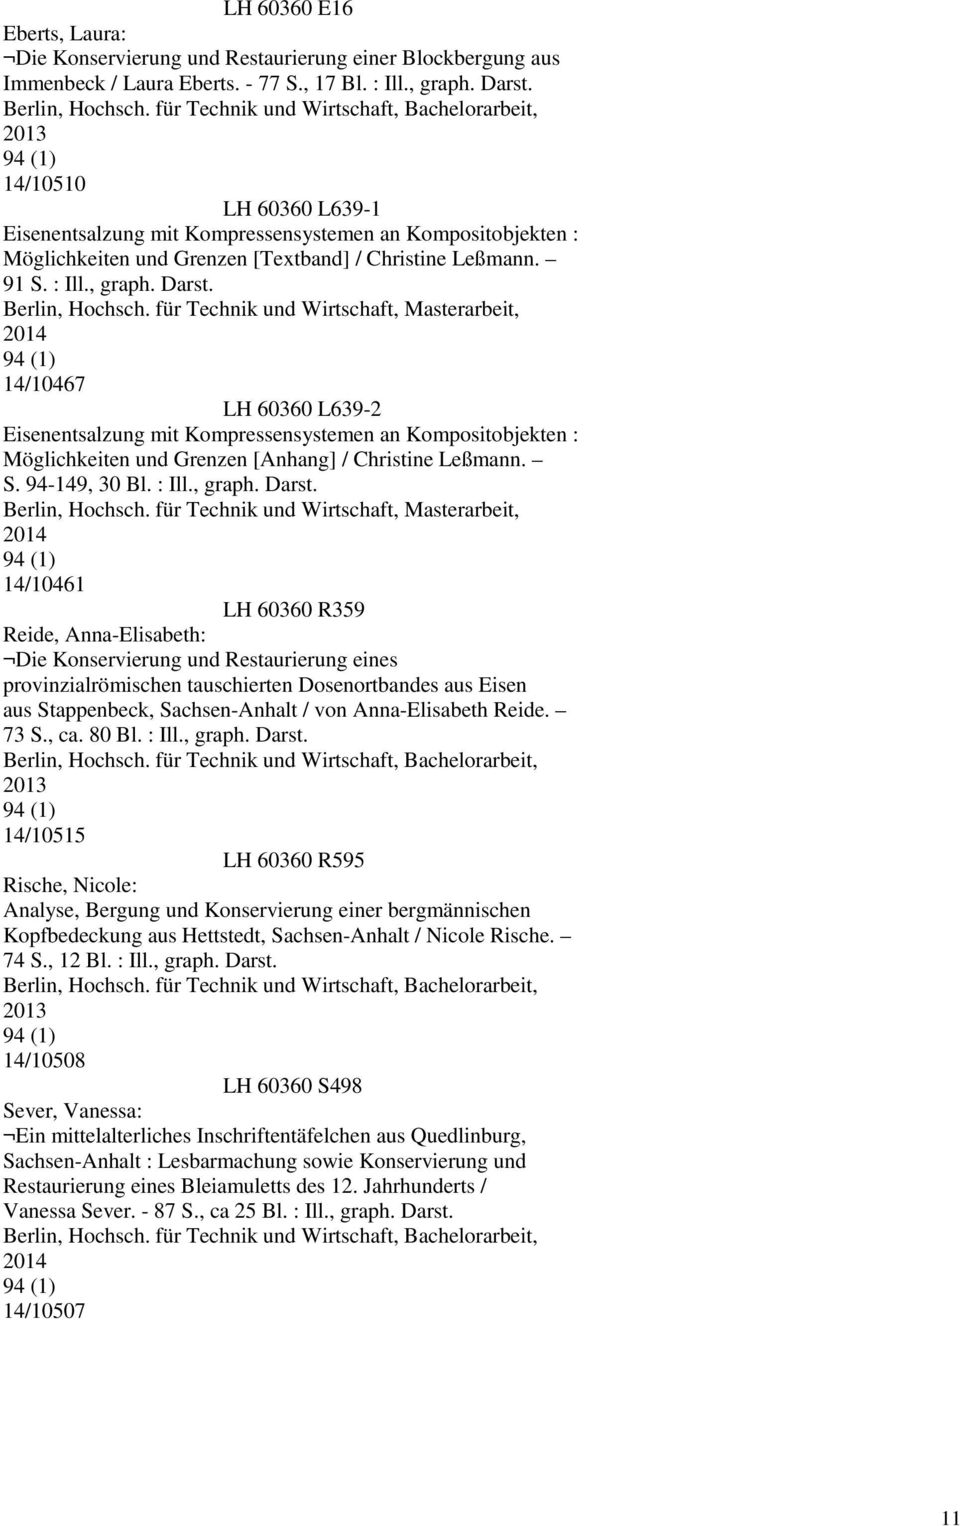 14/10467 LH 60360 L639-2 Eisenentsalzung mit Kompressensystemen an Kompositobjekten : Möglichkeiten und Grenzen [Anhang] / Christine Leßmann. S. 94-149, 30 Bl. : Ill., graph. Darst.